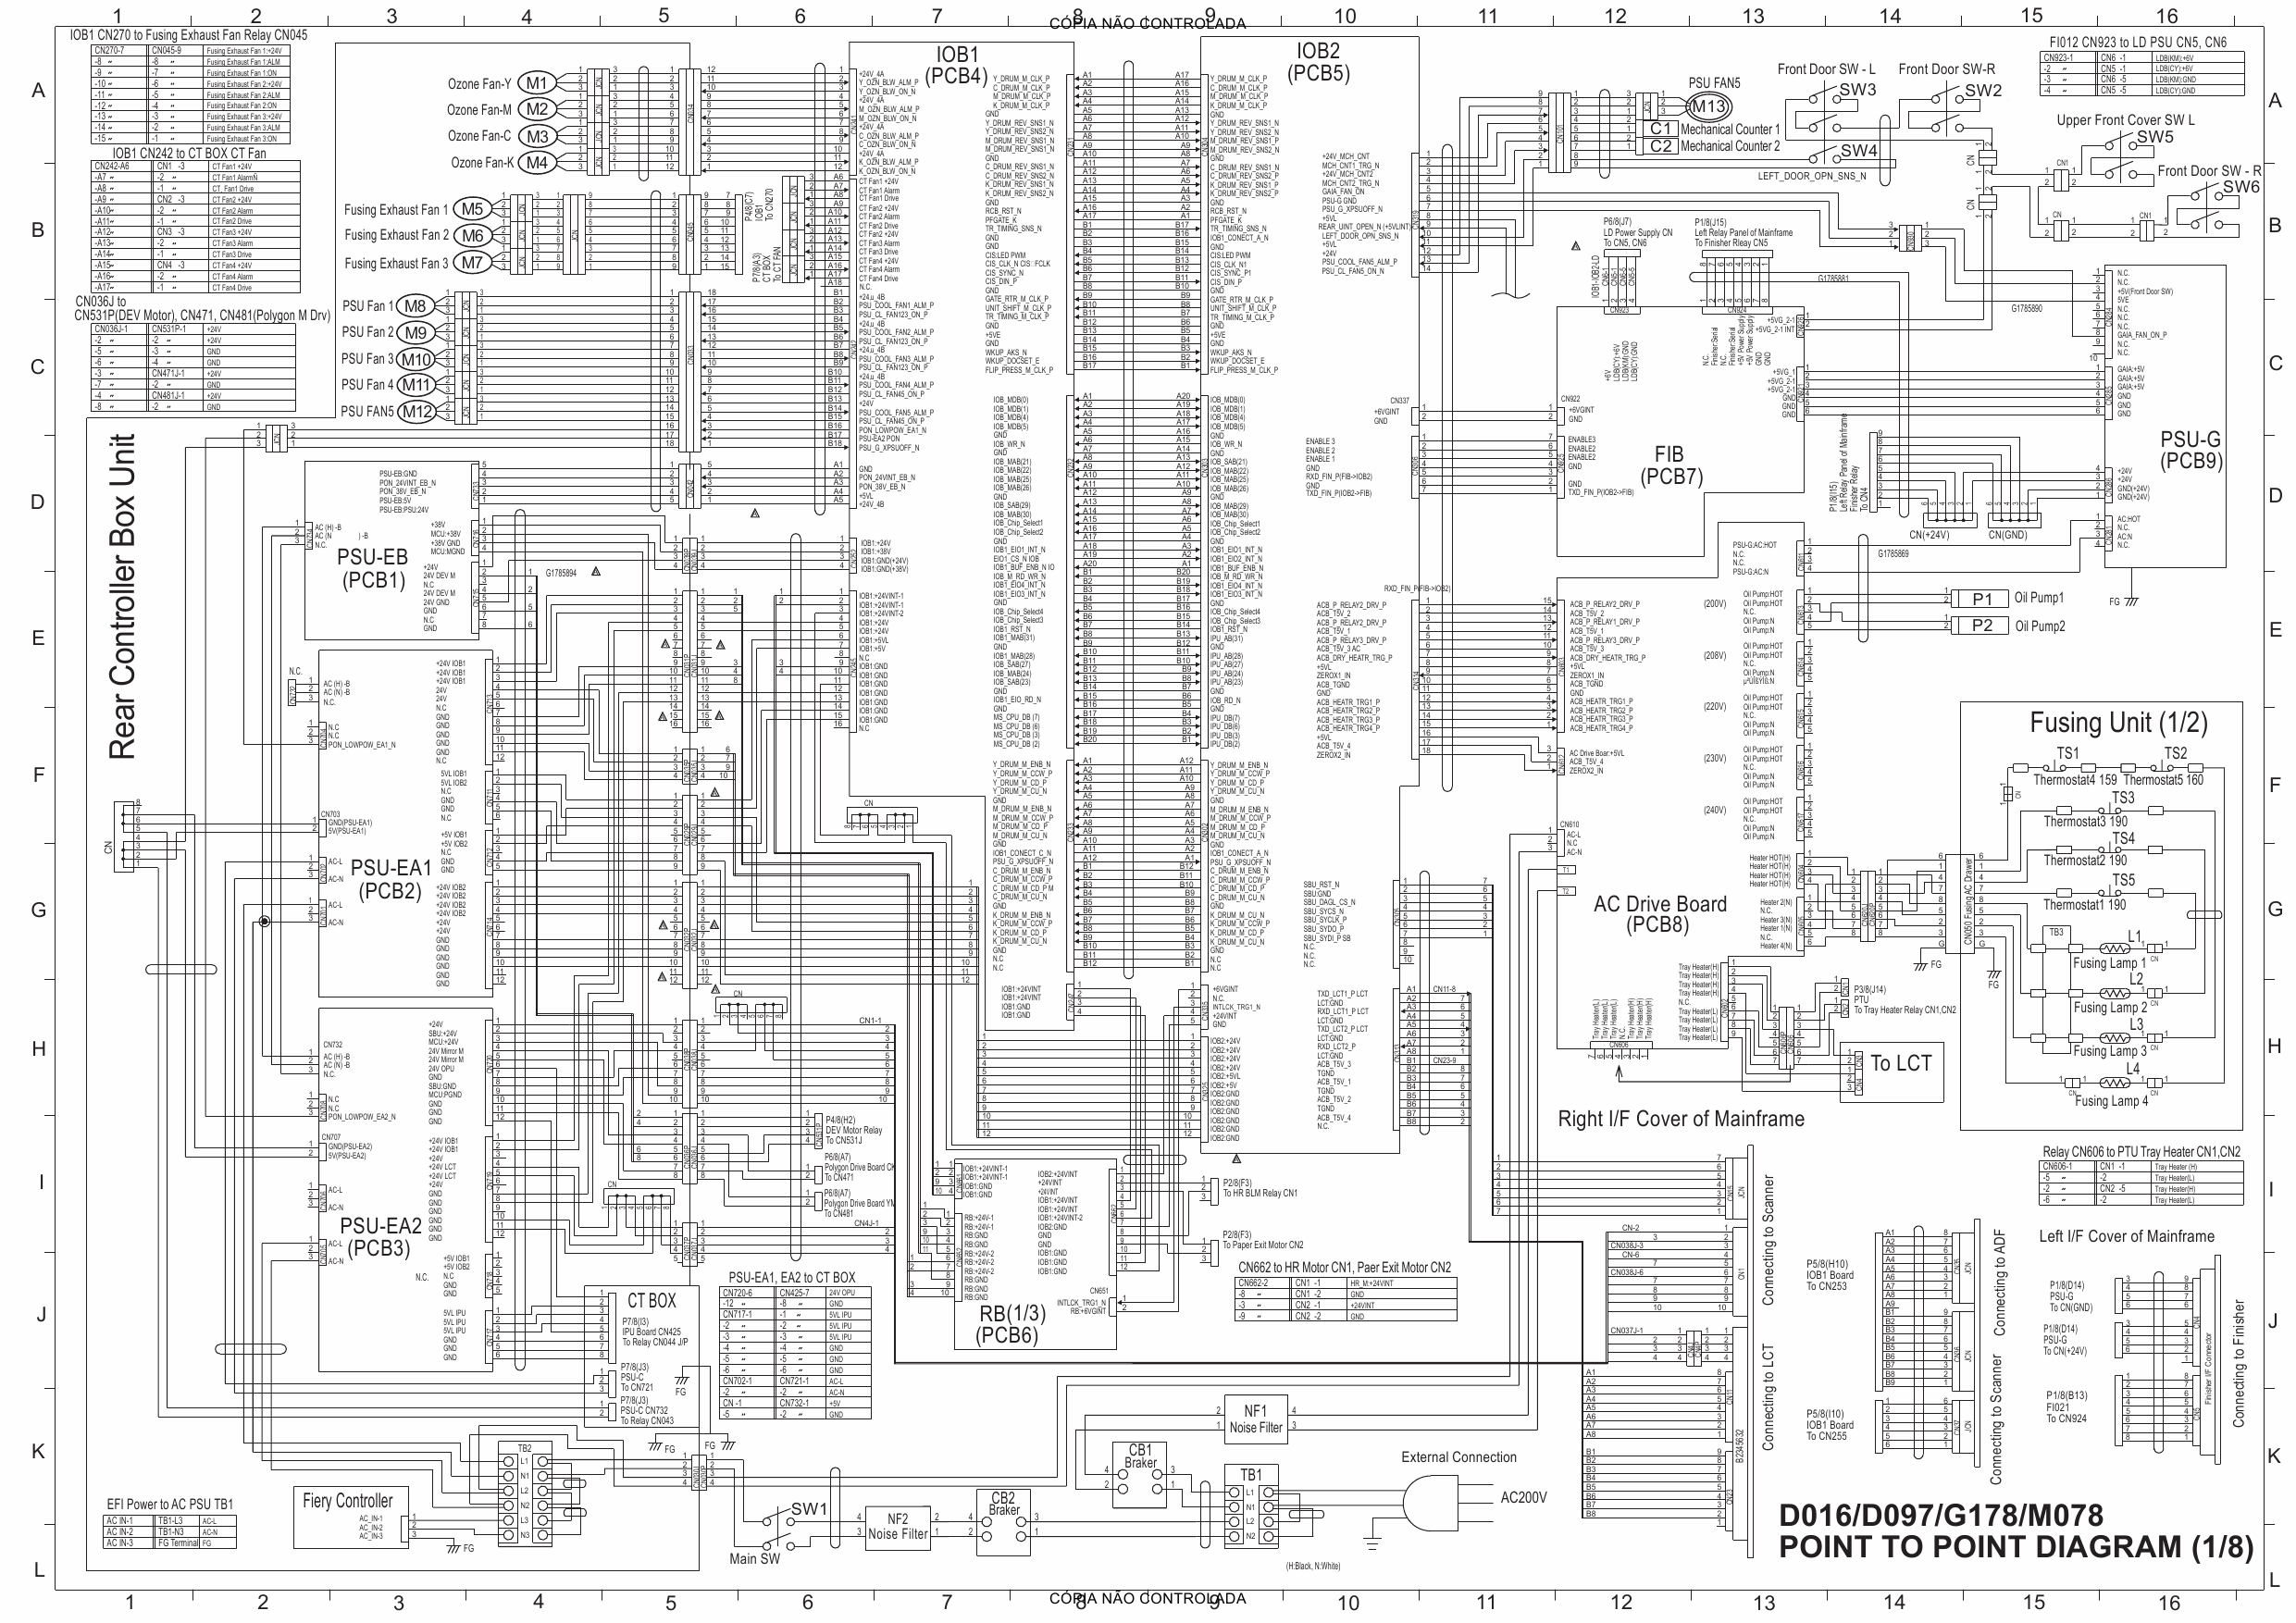 RICOH Aficio Pro-C720s C900s C900 C720 D016 D097 G178 M078 Circuit Diagram-1